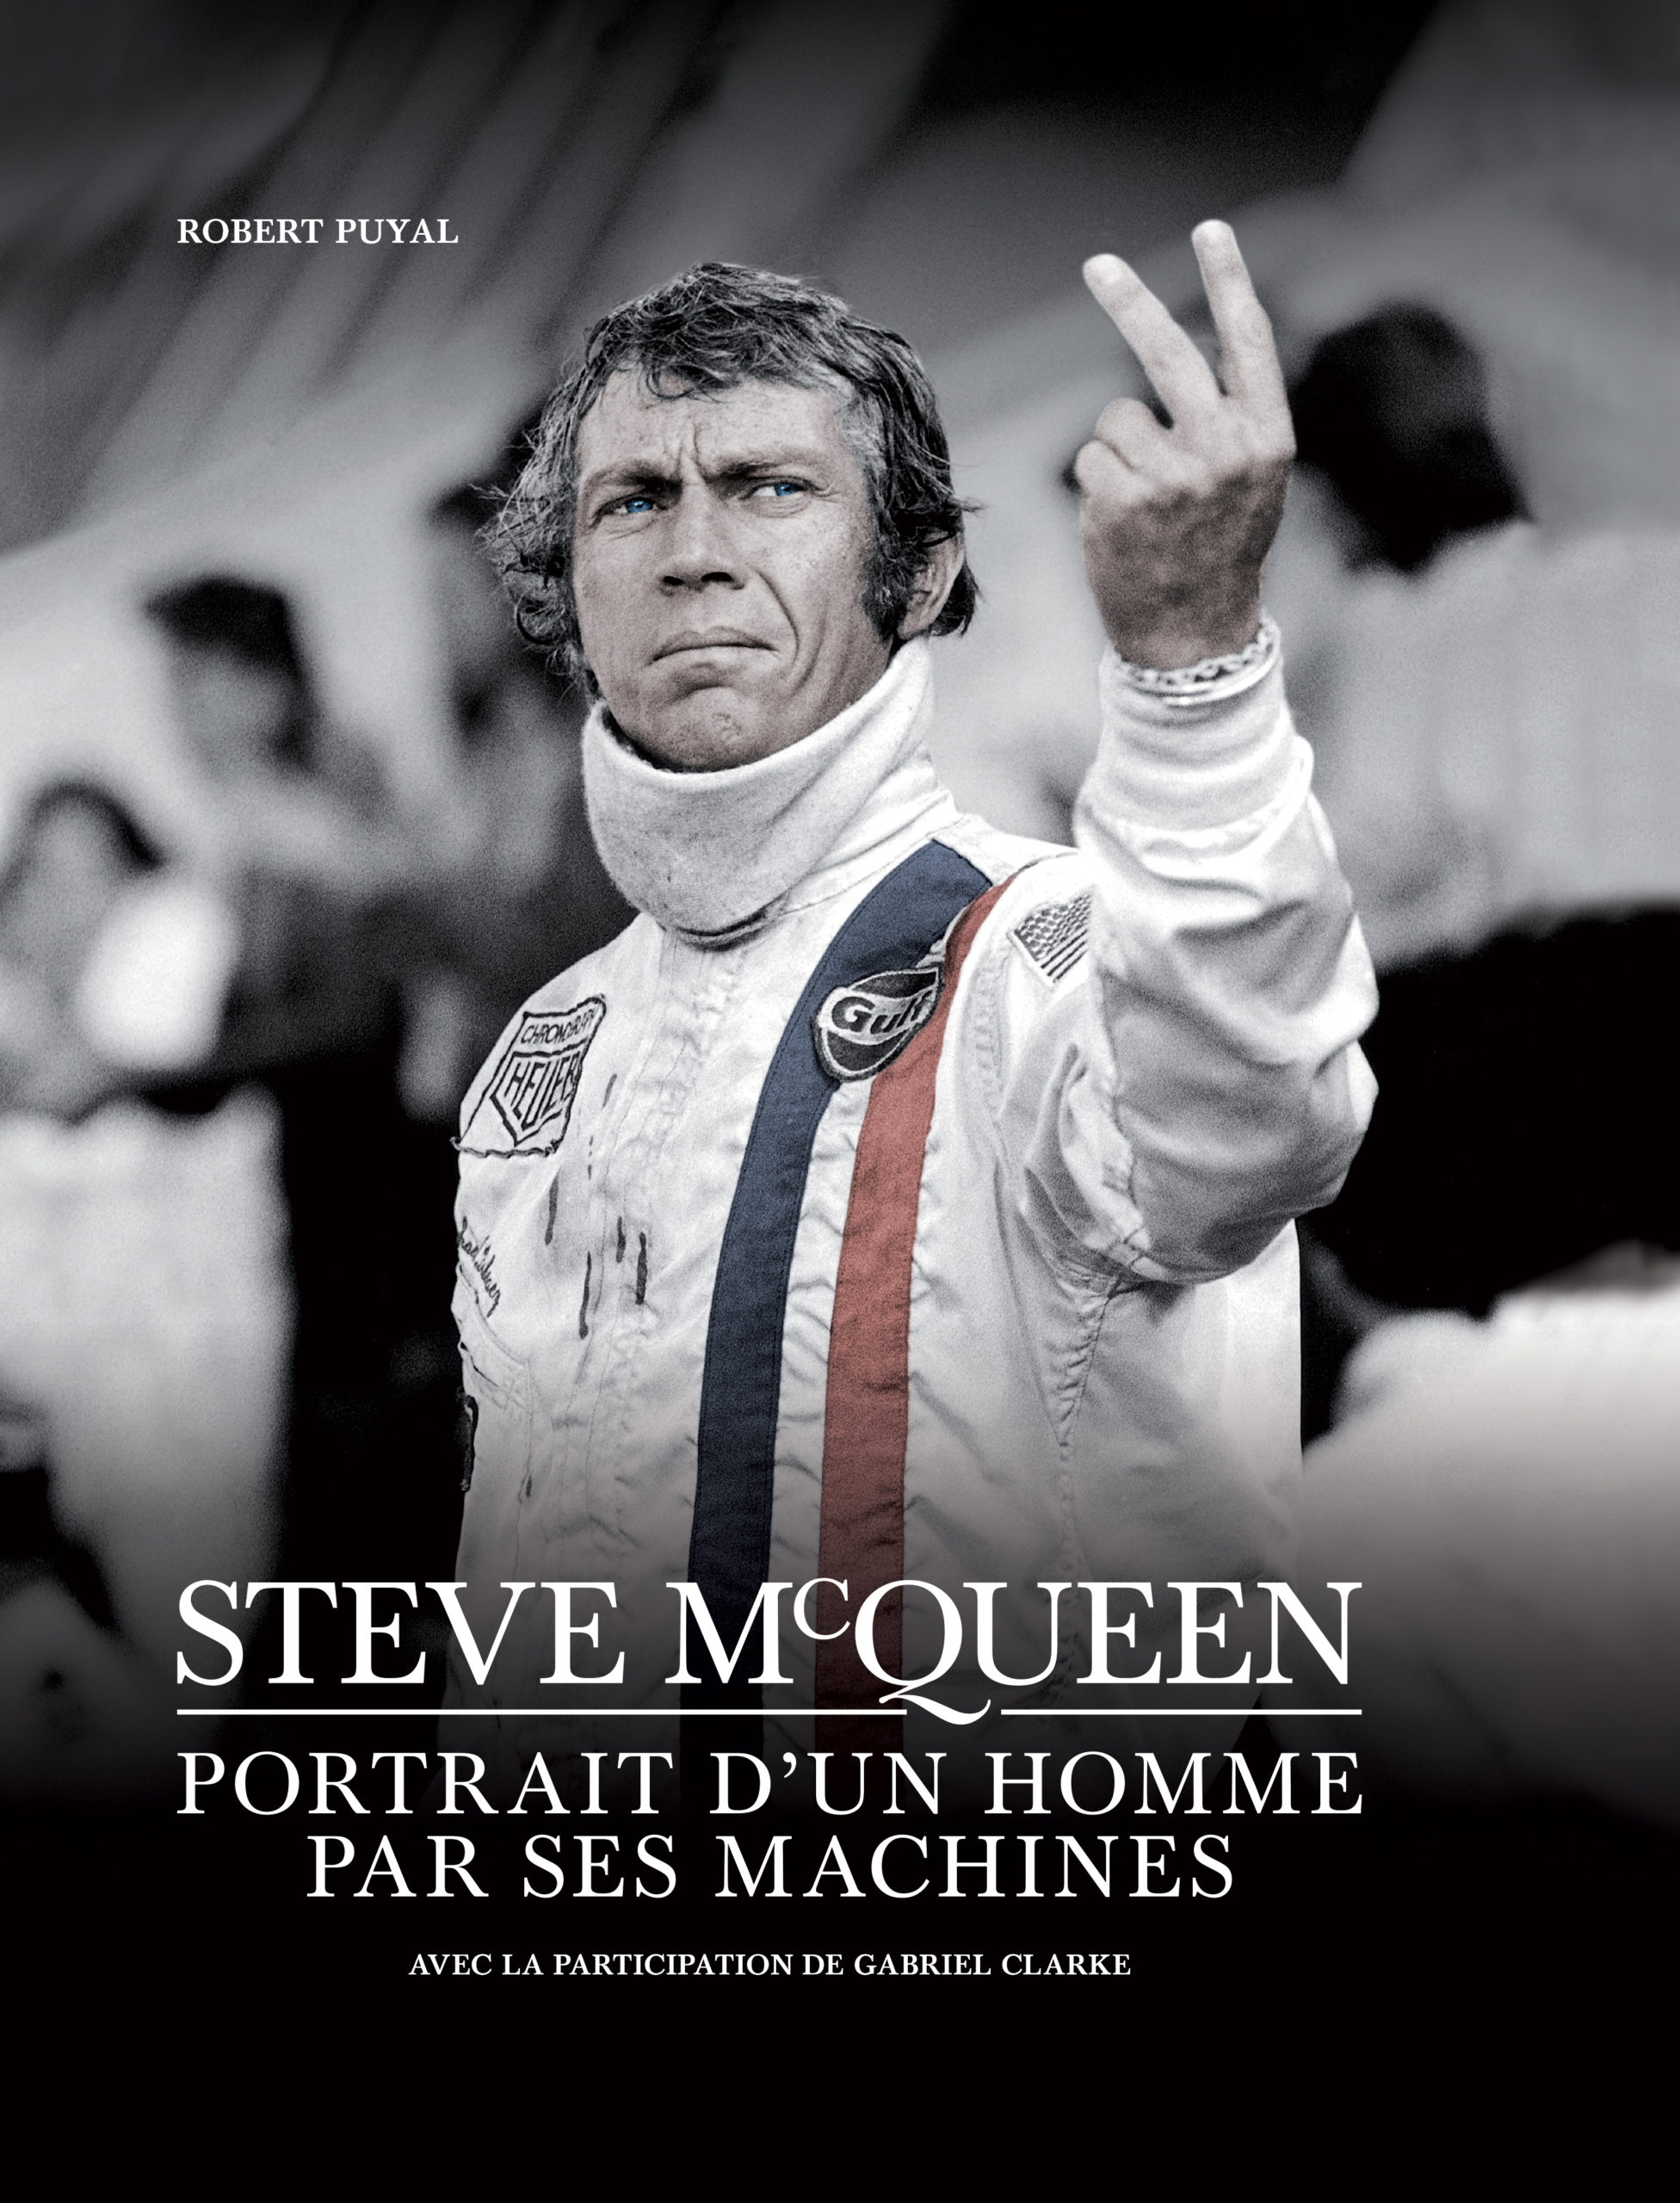 Steve McQueen, portrait d'un homme par ses machines